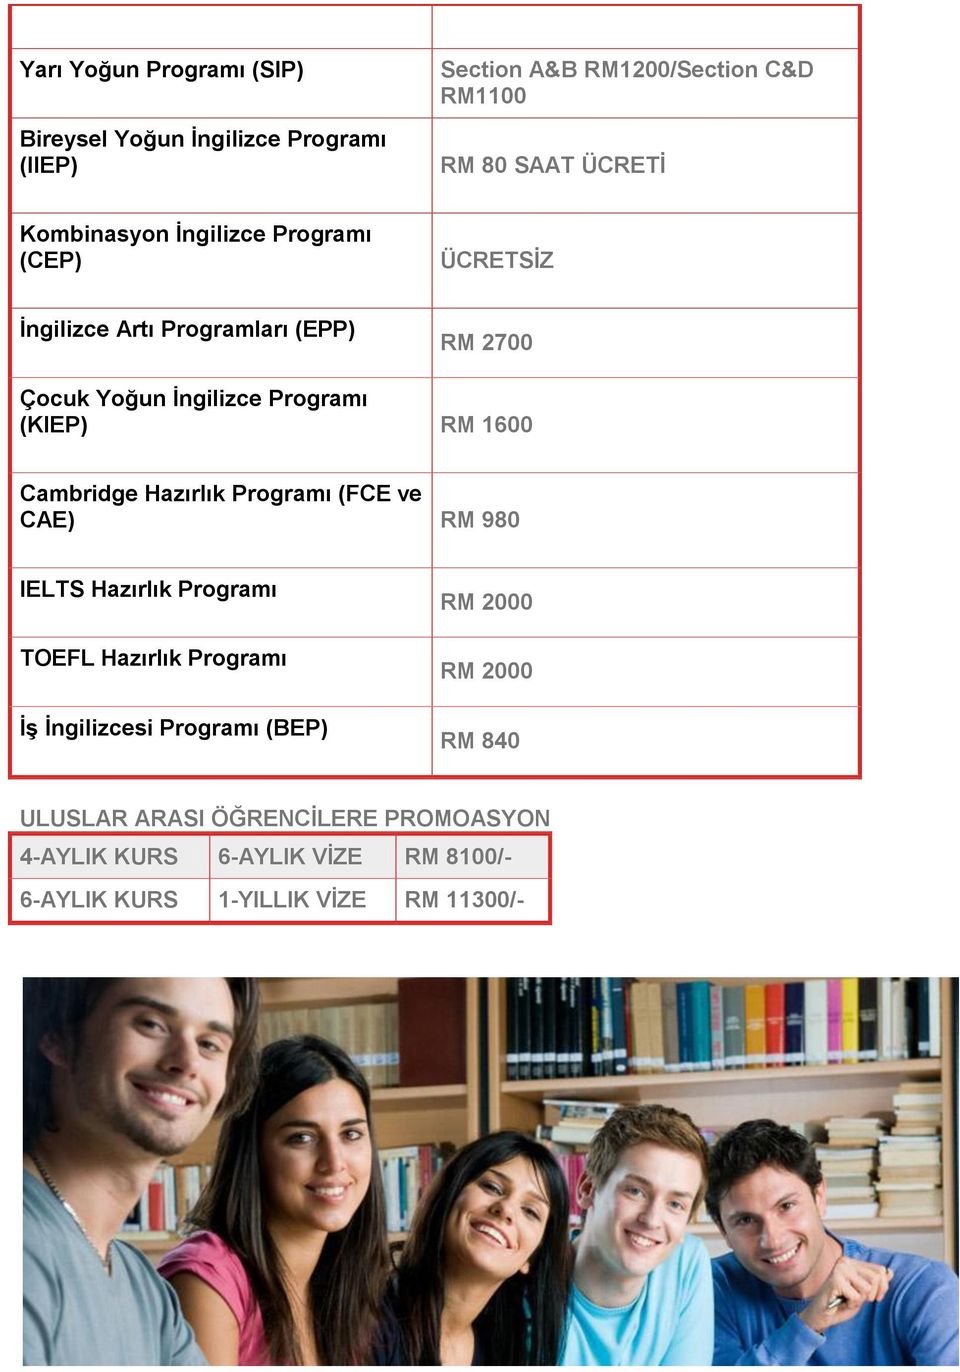 1600 Cambridge Hazırlık Programı (FCE ve CAE) RM 980 IELTS Hazırlık Programı TOEFL Hazırlık Programı Ġş Ġngilizcesi Programı